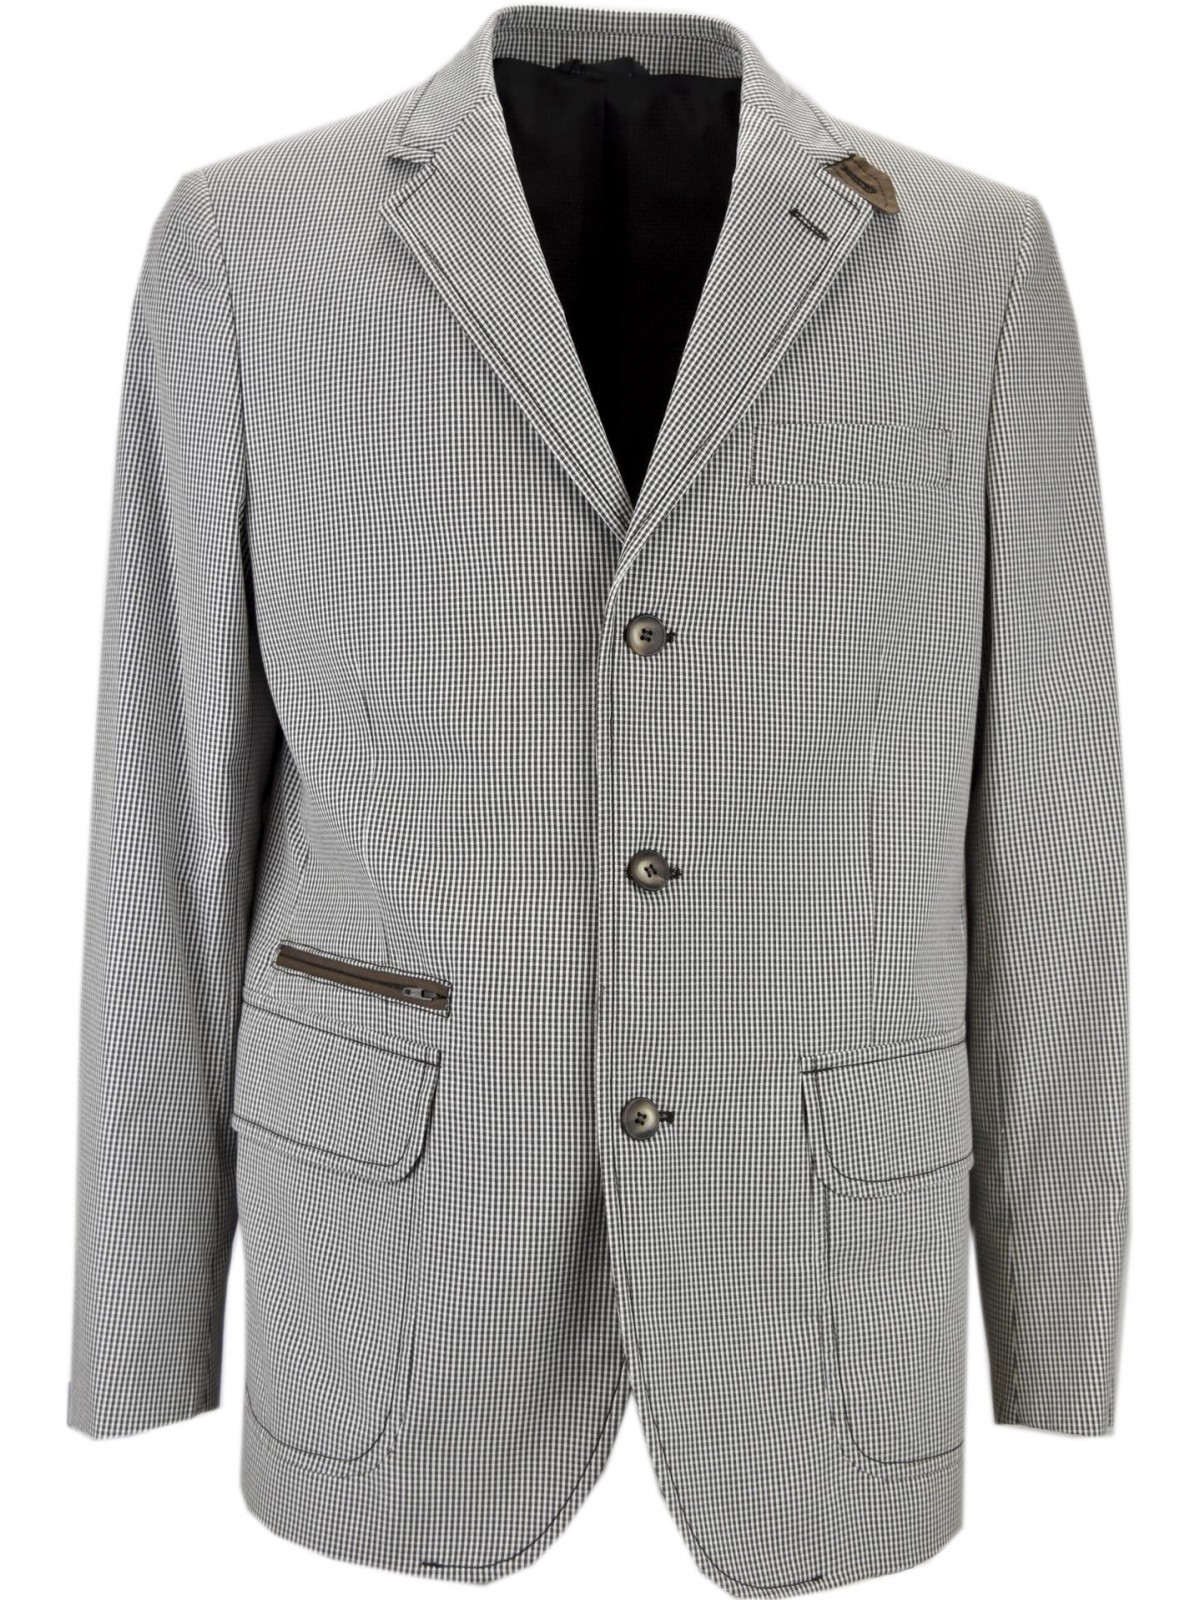 Man Jacket 50 L Vichy Checks Brown White Cotton 3Buttons PE 39619